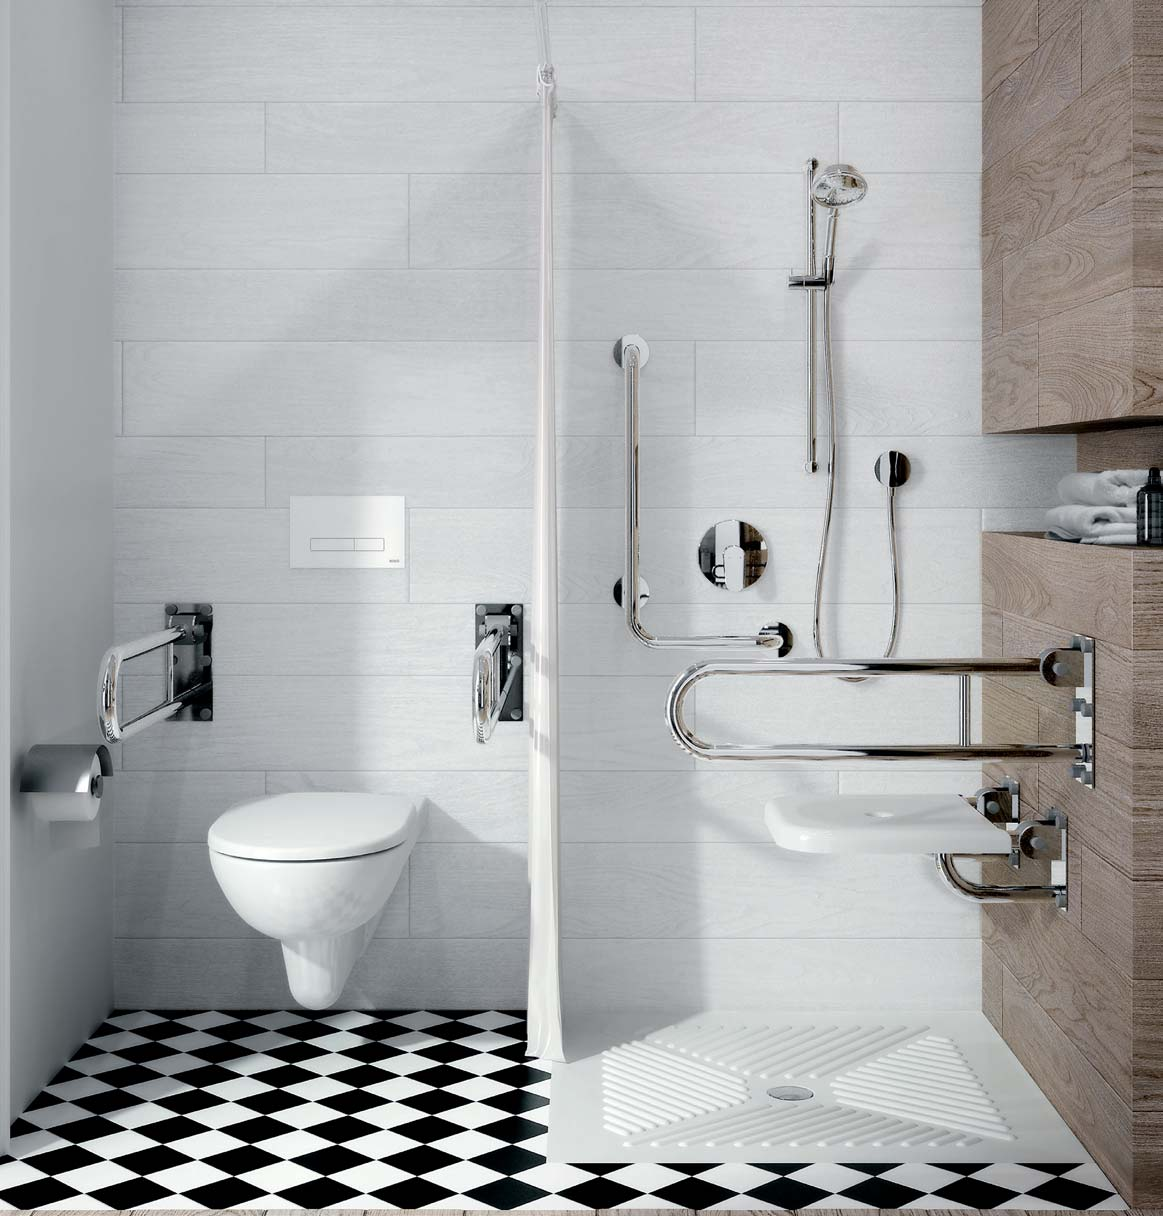 42 NOVA PRO BEZ BARIÉR / LEHNEN Bezbariérové kúpeľne anebo kúpeľne pre staršie osoby s pohybovým obmedzením vyžadujú špeciálne vybavenie. Používanie kúpeľne musí byť bezpečné a komfortné.